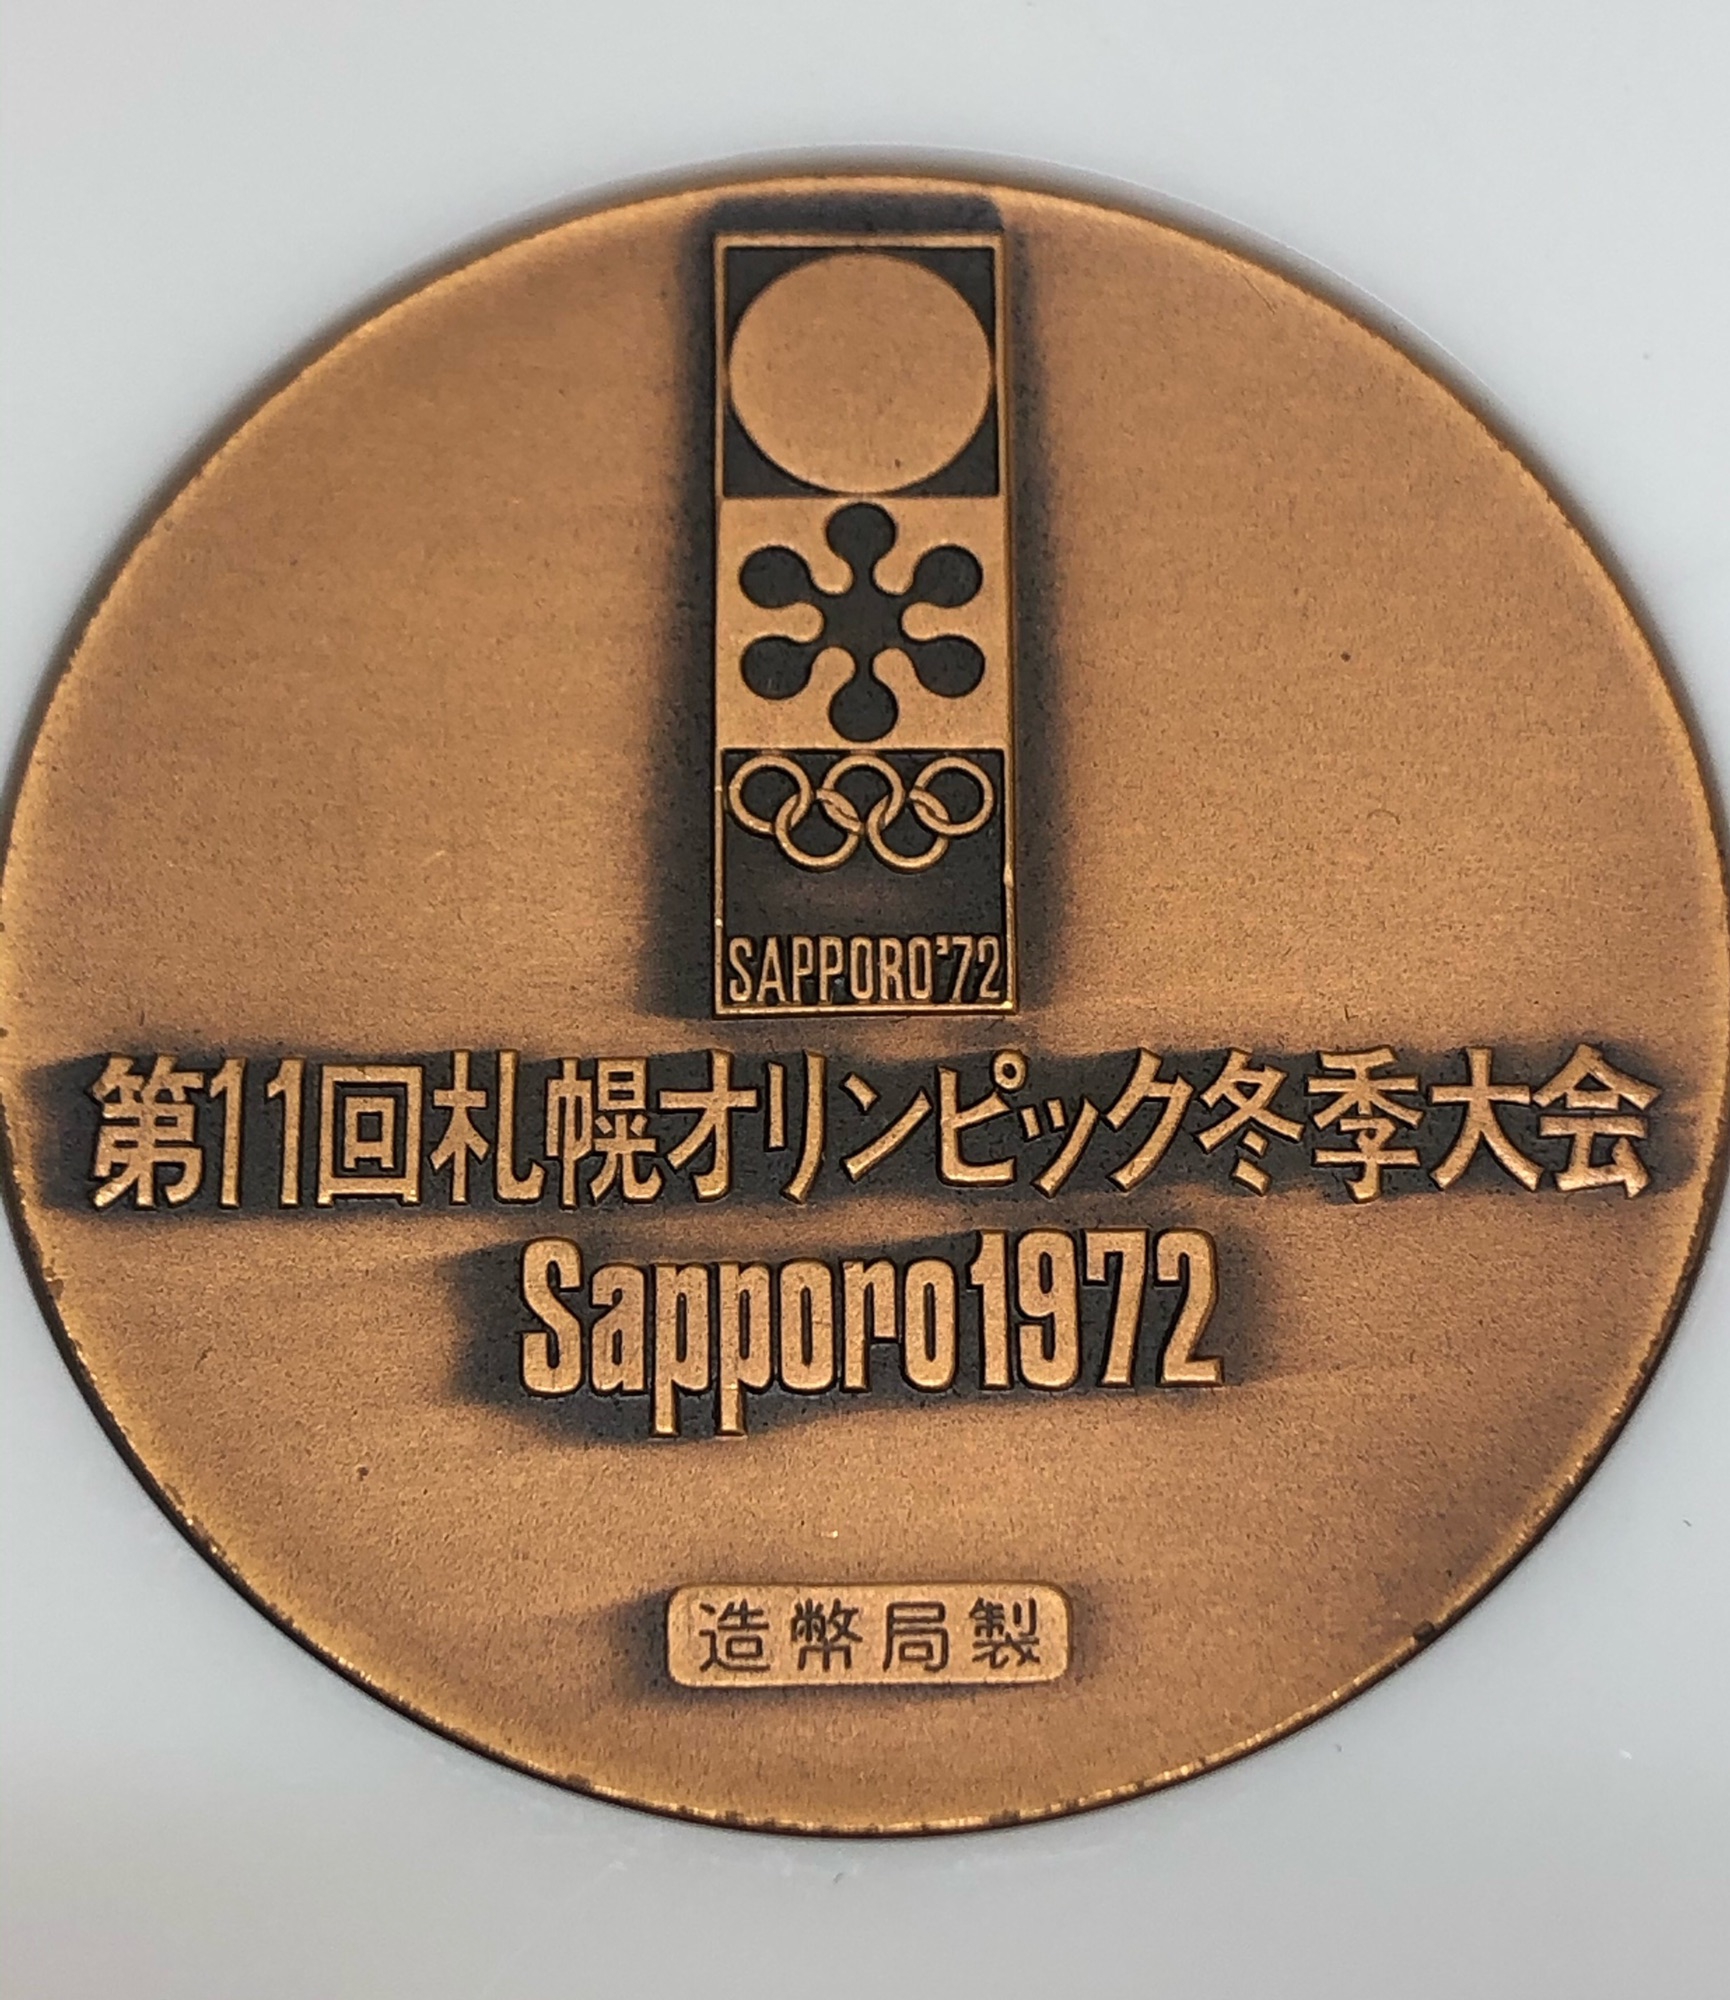 札幌オリンピック冬季大会 メダル Manten no-その他